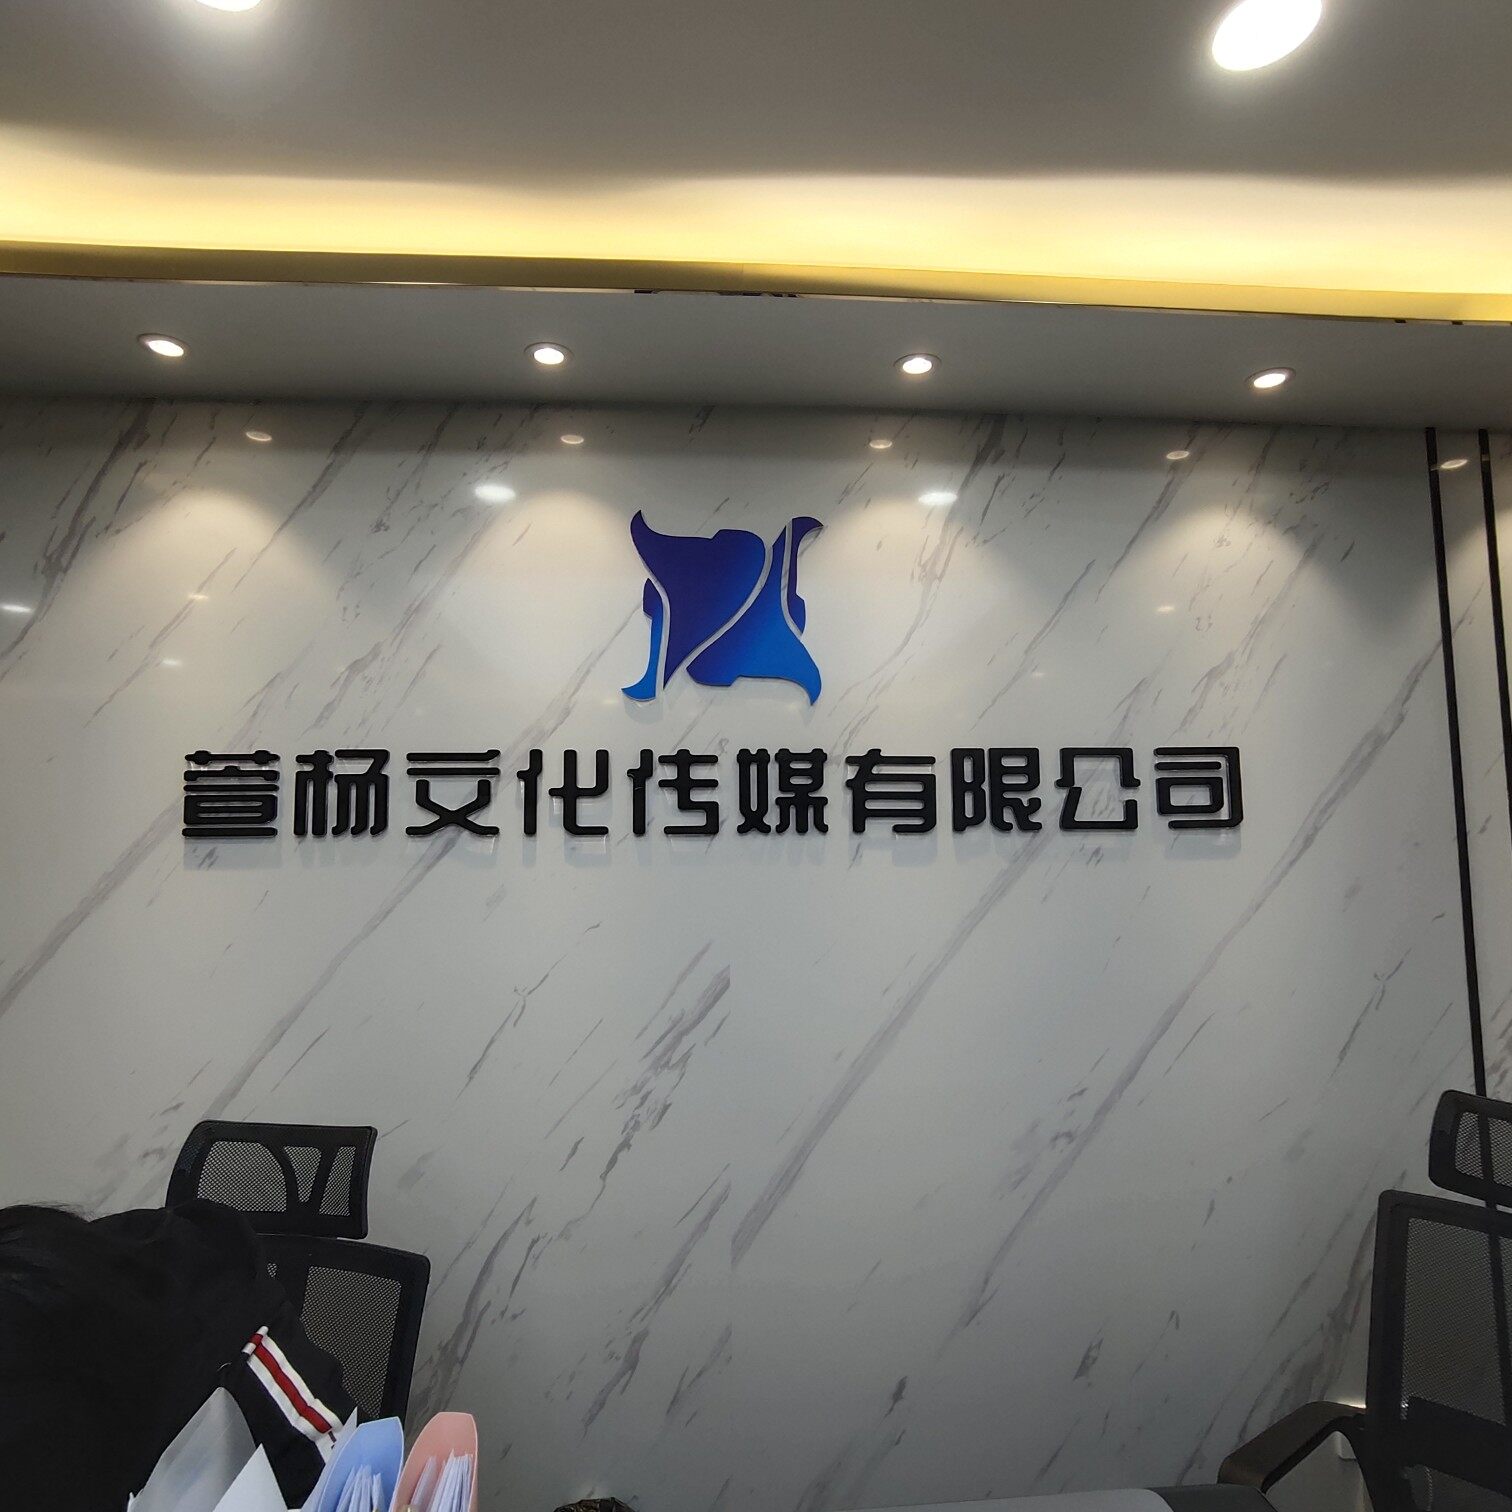 西安萱杨文化传媒有限公司logo